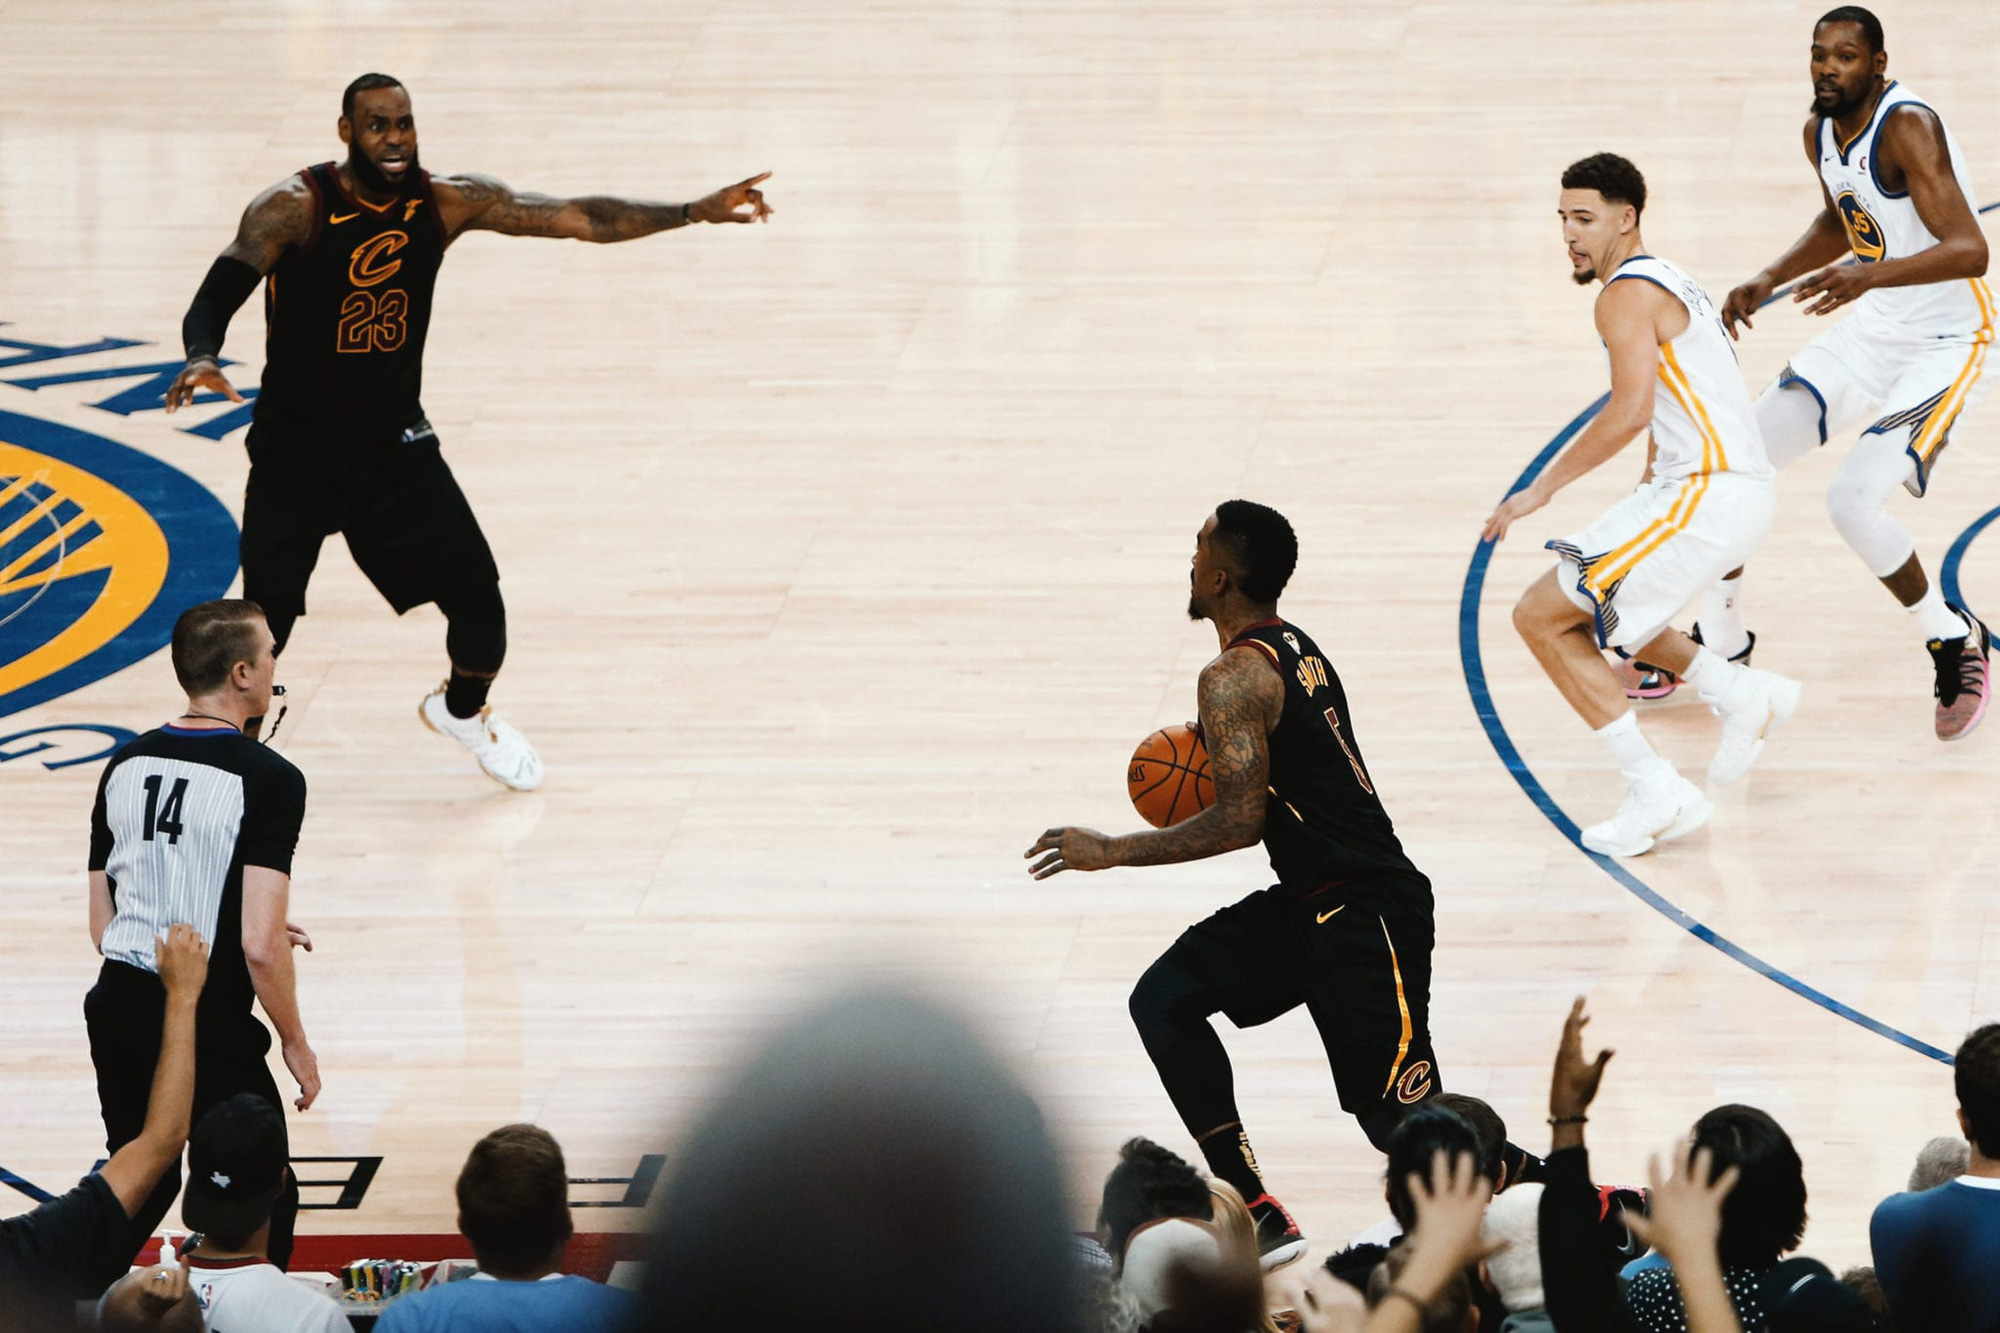 10 khoảnh khắc đắt giá ở giải bóng rổ hấp dẫn nhất thế giới trong thập kỷ vừa qua: Kobe Bryant thăng hoa lần cuối, Stephen Curry bó gối nhìn triều đại Golden State Warriors sụp đổ - Ảnh 8.